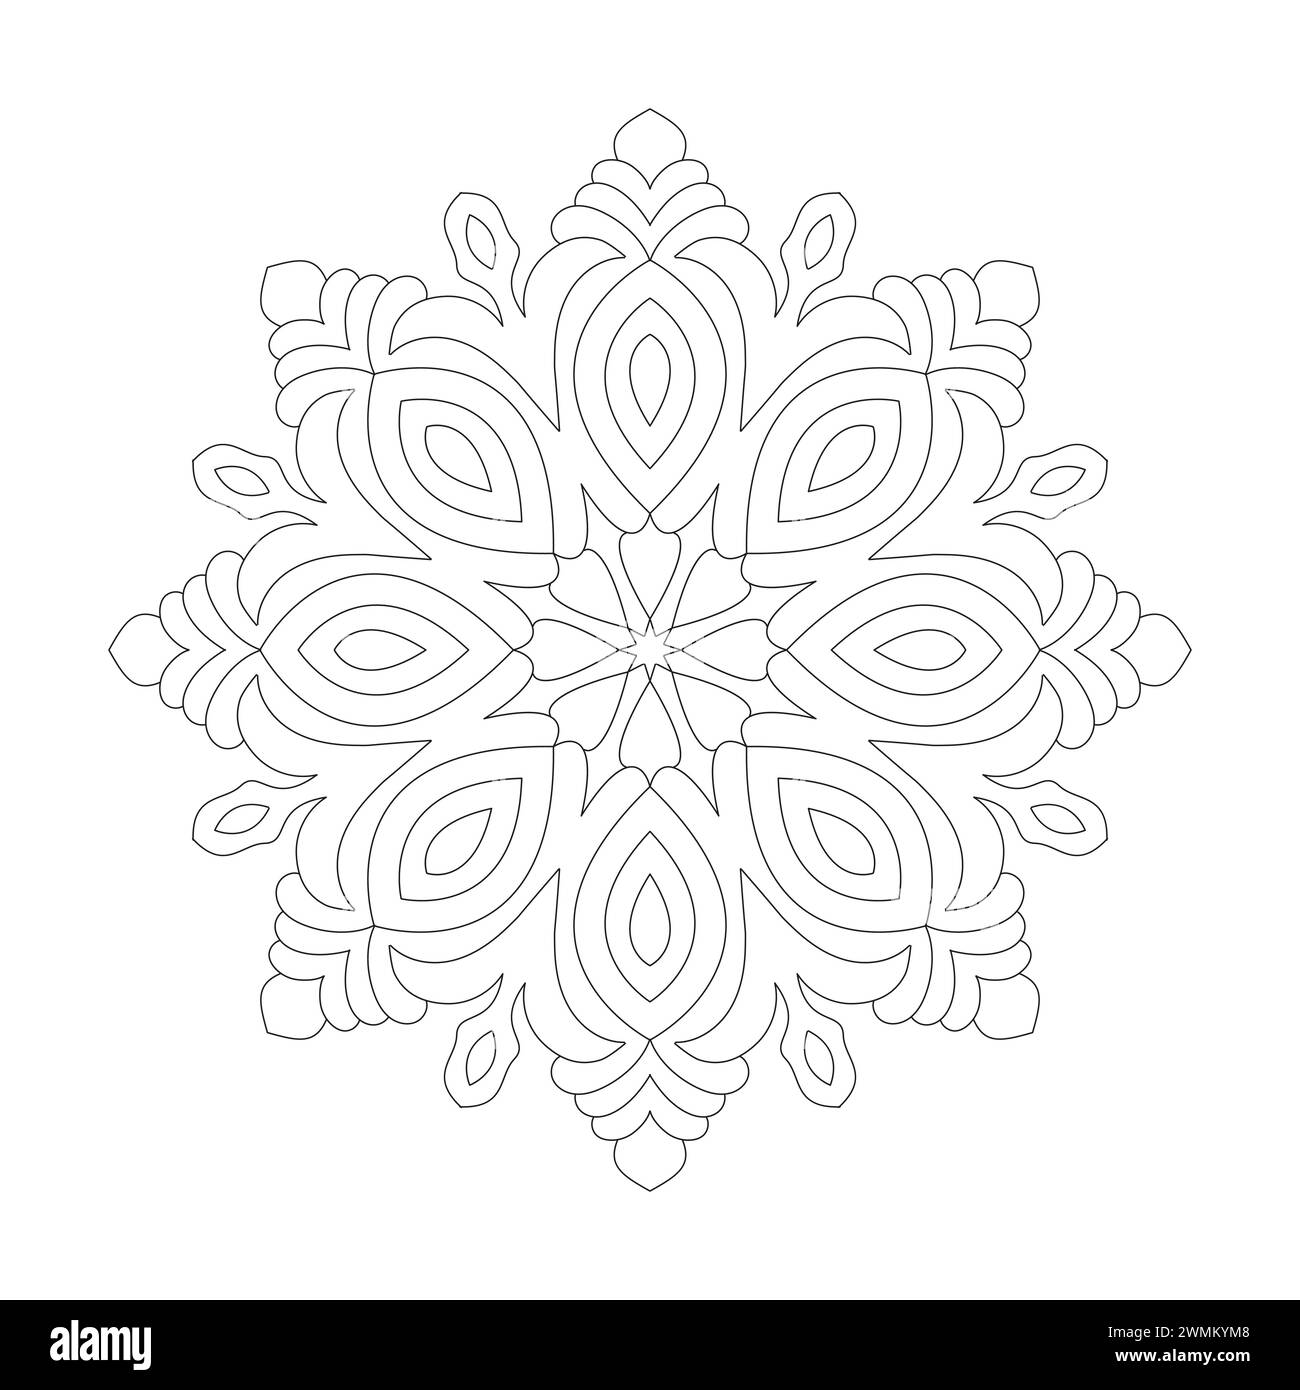 Pagina del libro da colorare Cosmic Floral Mandala per l'interno del libro kdp. Petali tranquilli, capacità di rilassarsi, esperienze cerebrali, Harmonous Haven, pacifico Portr Illustrazione Vettoriale